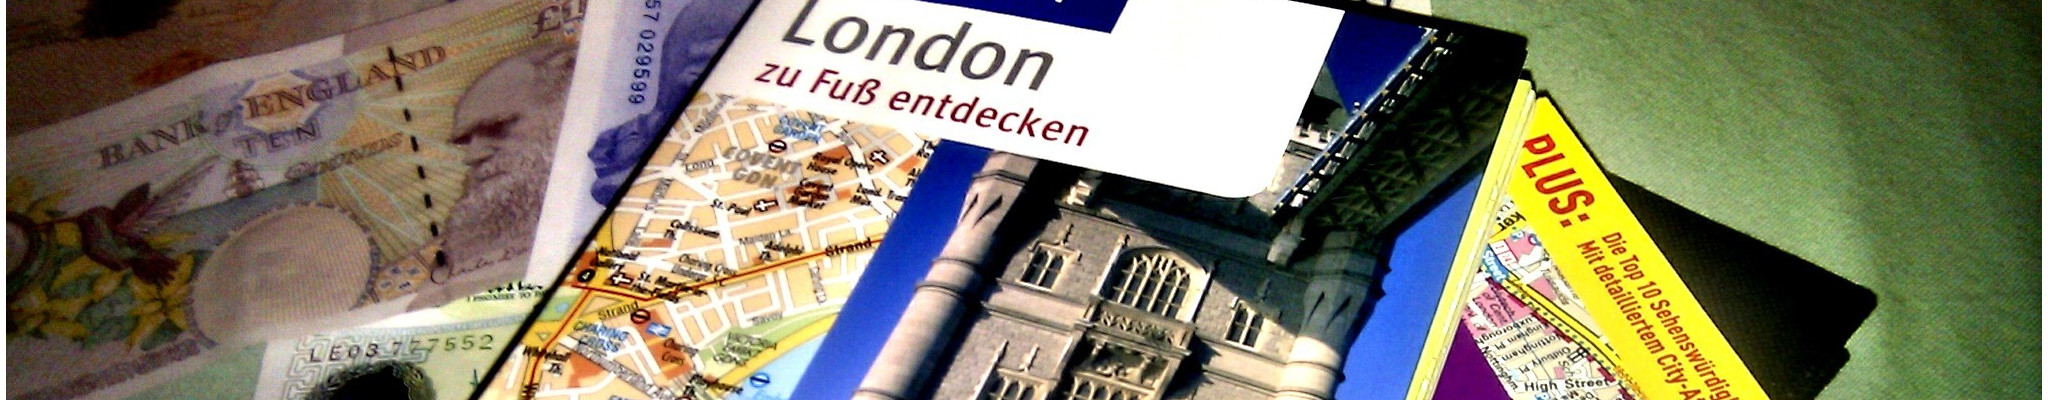 London Reiseführer